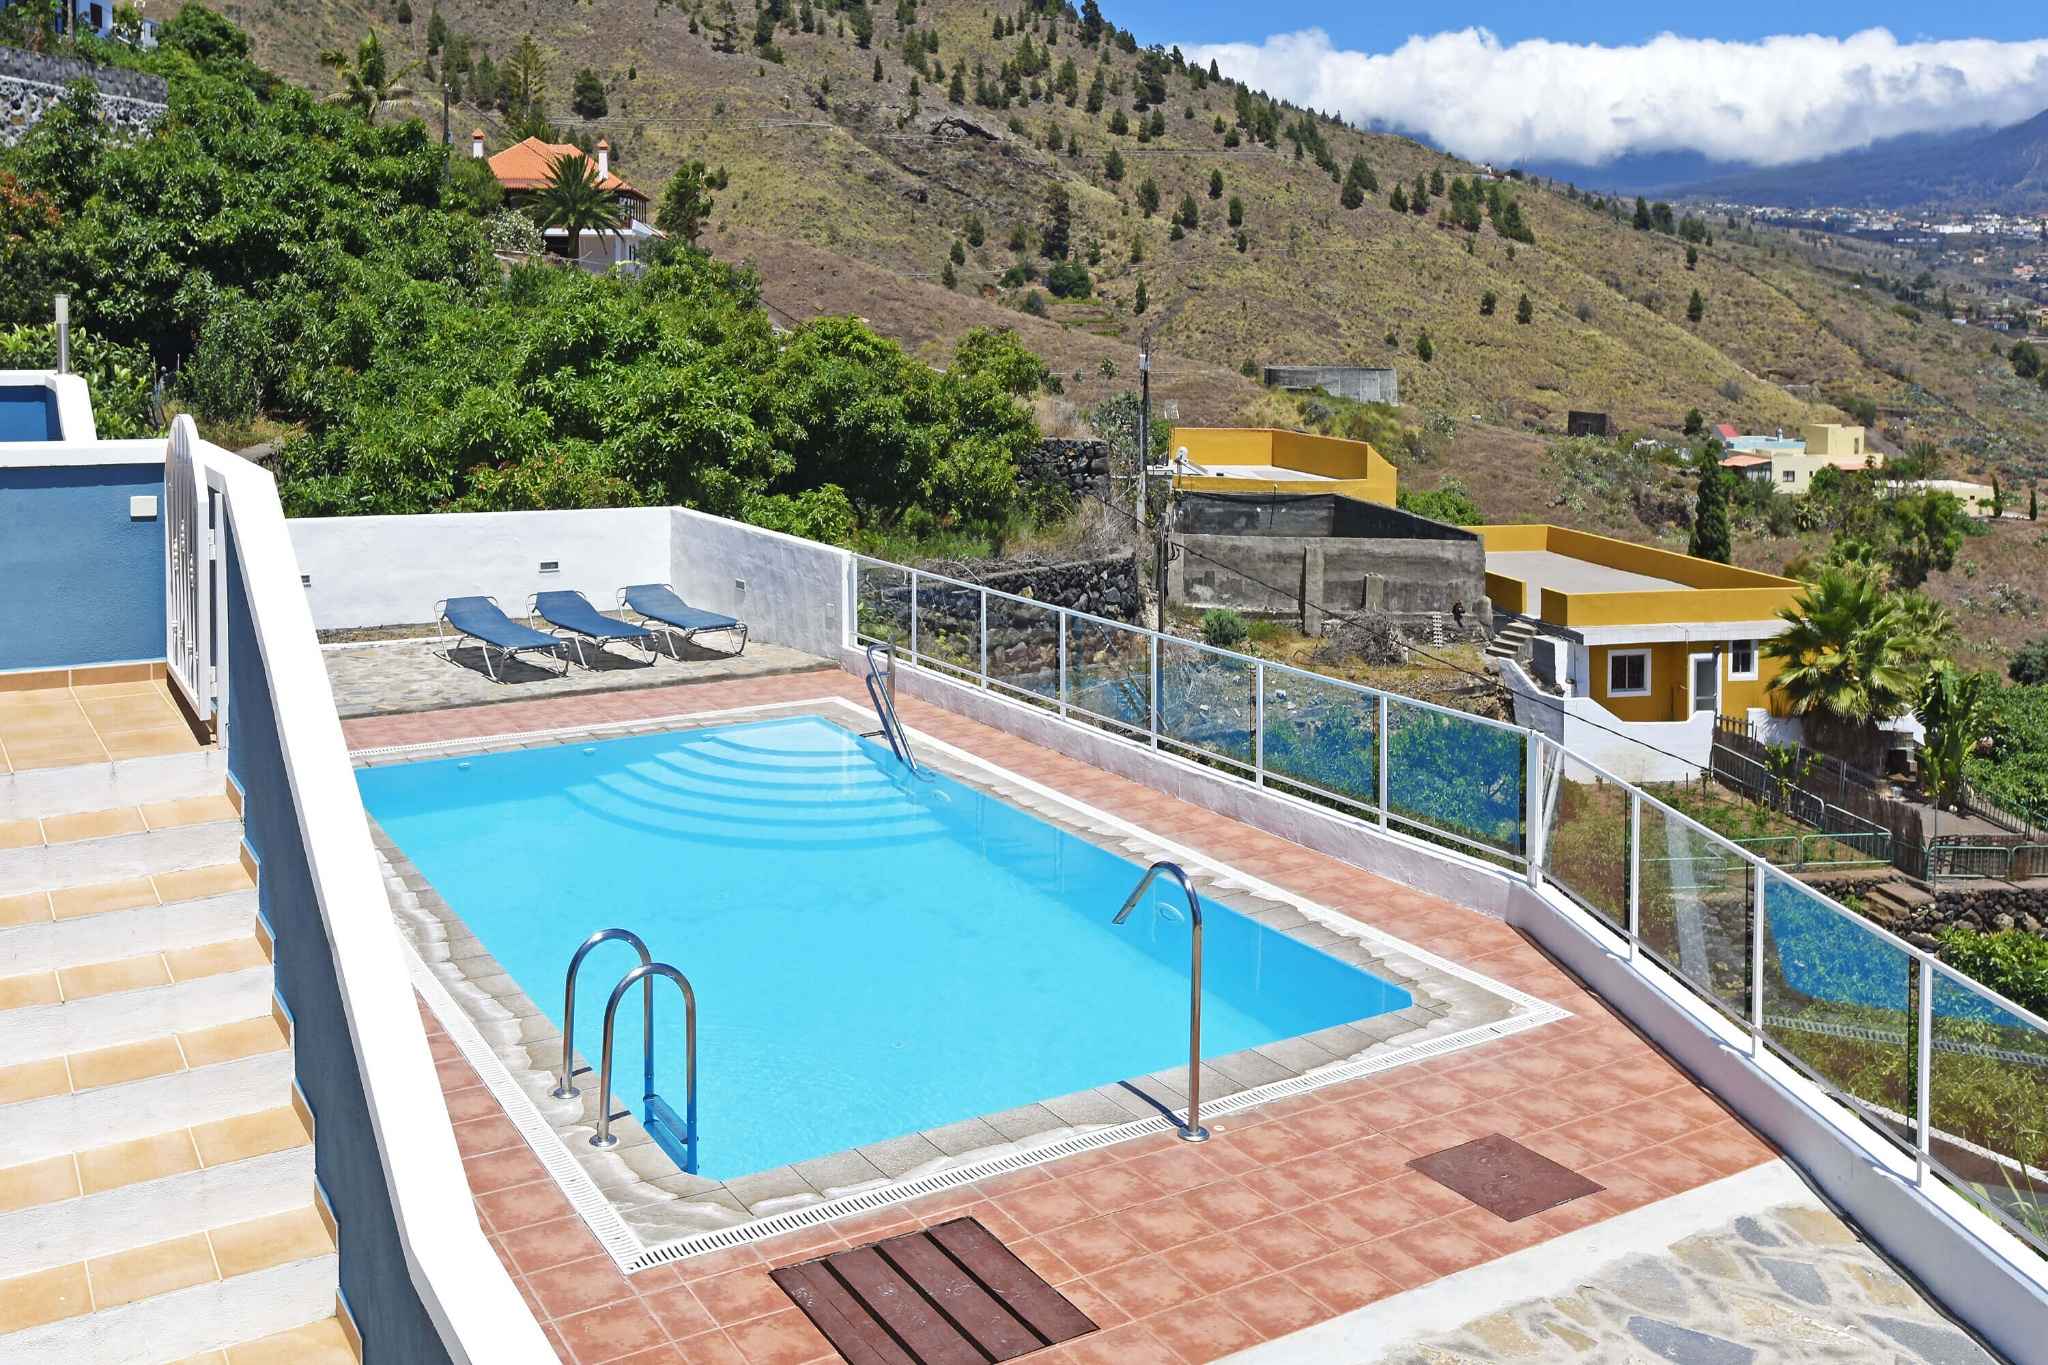 Leilighet med felles svømmebasseng og flott terrasse med utsikt over havet